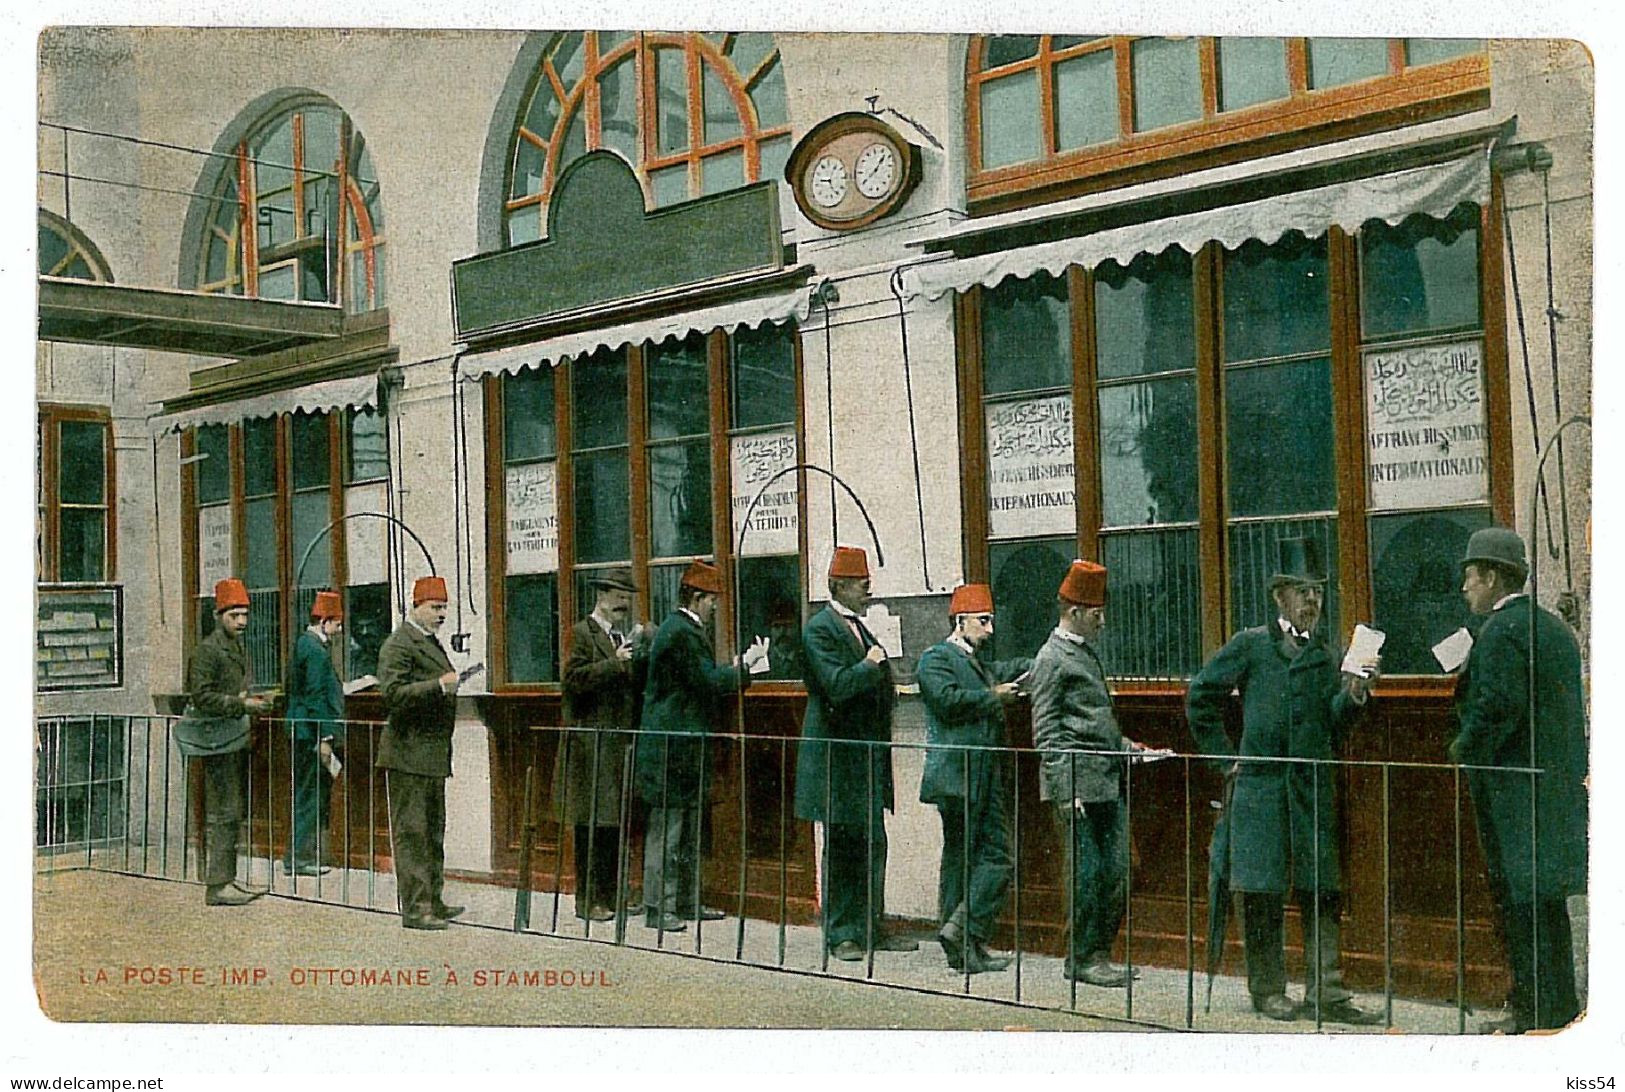 TR 13 - 7819 ISTAMBUL, Turkey, Post OFFICE - Old Postcard - Unused - Turkije